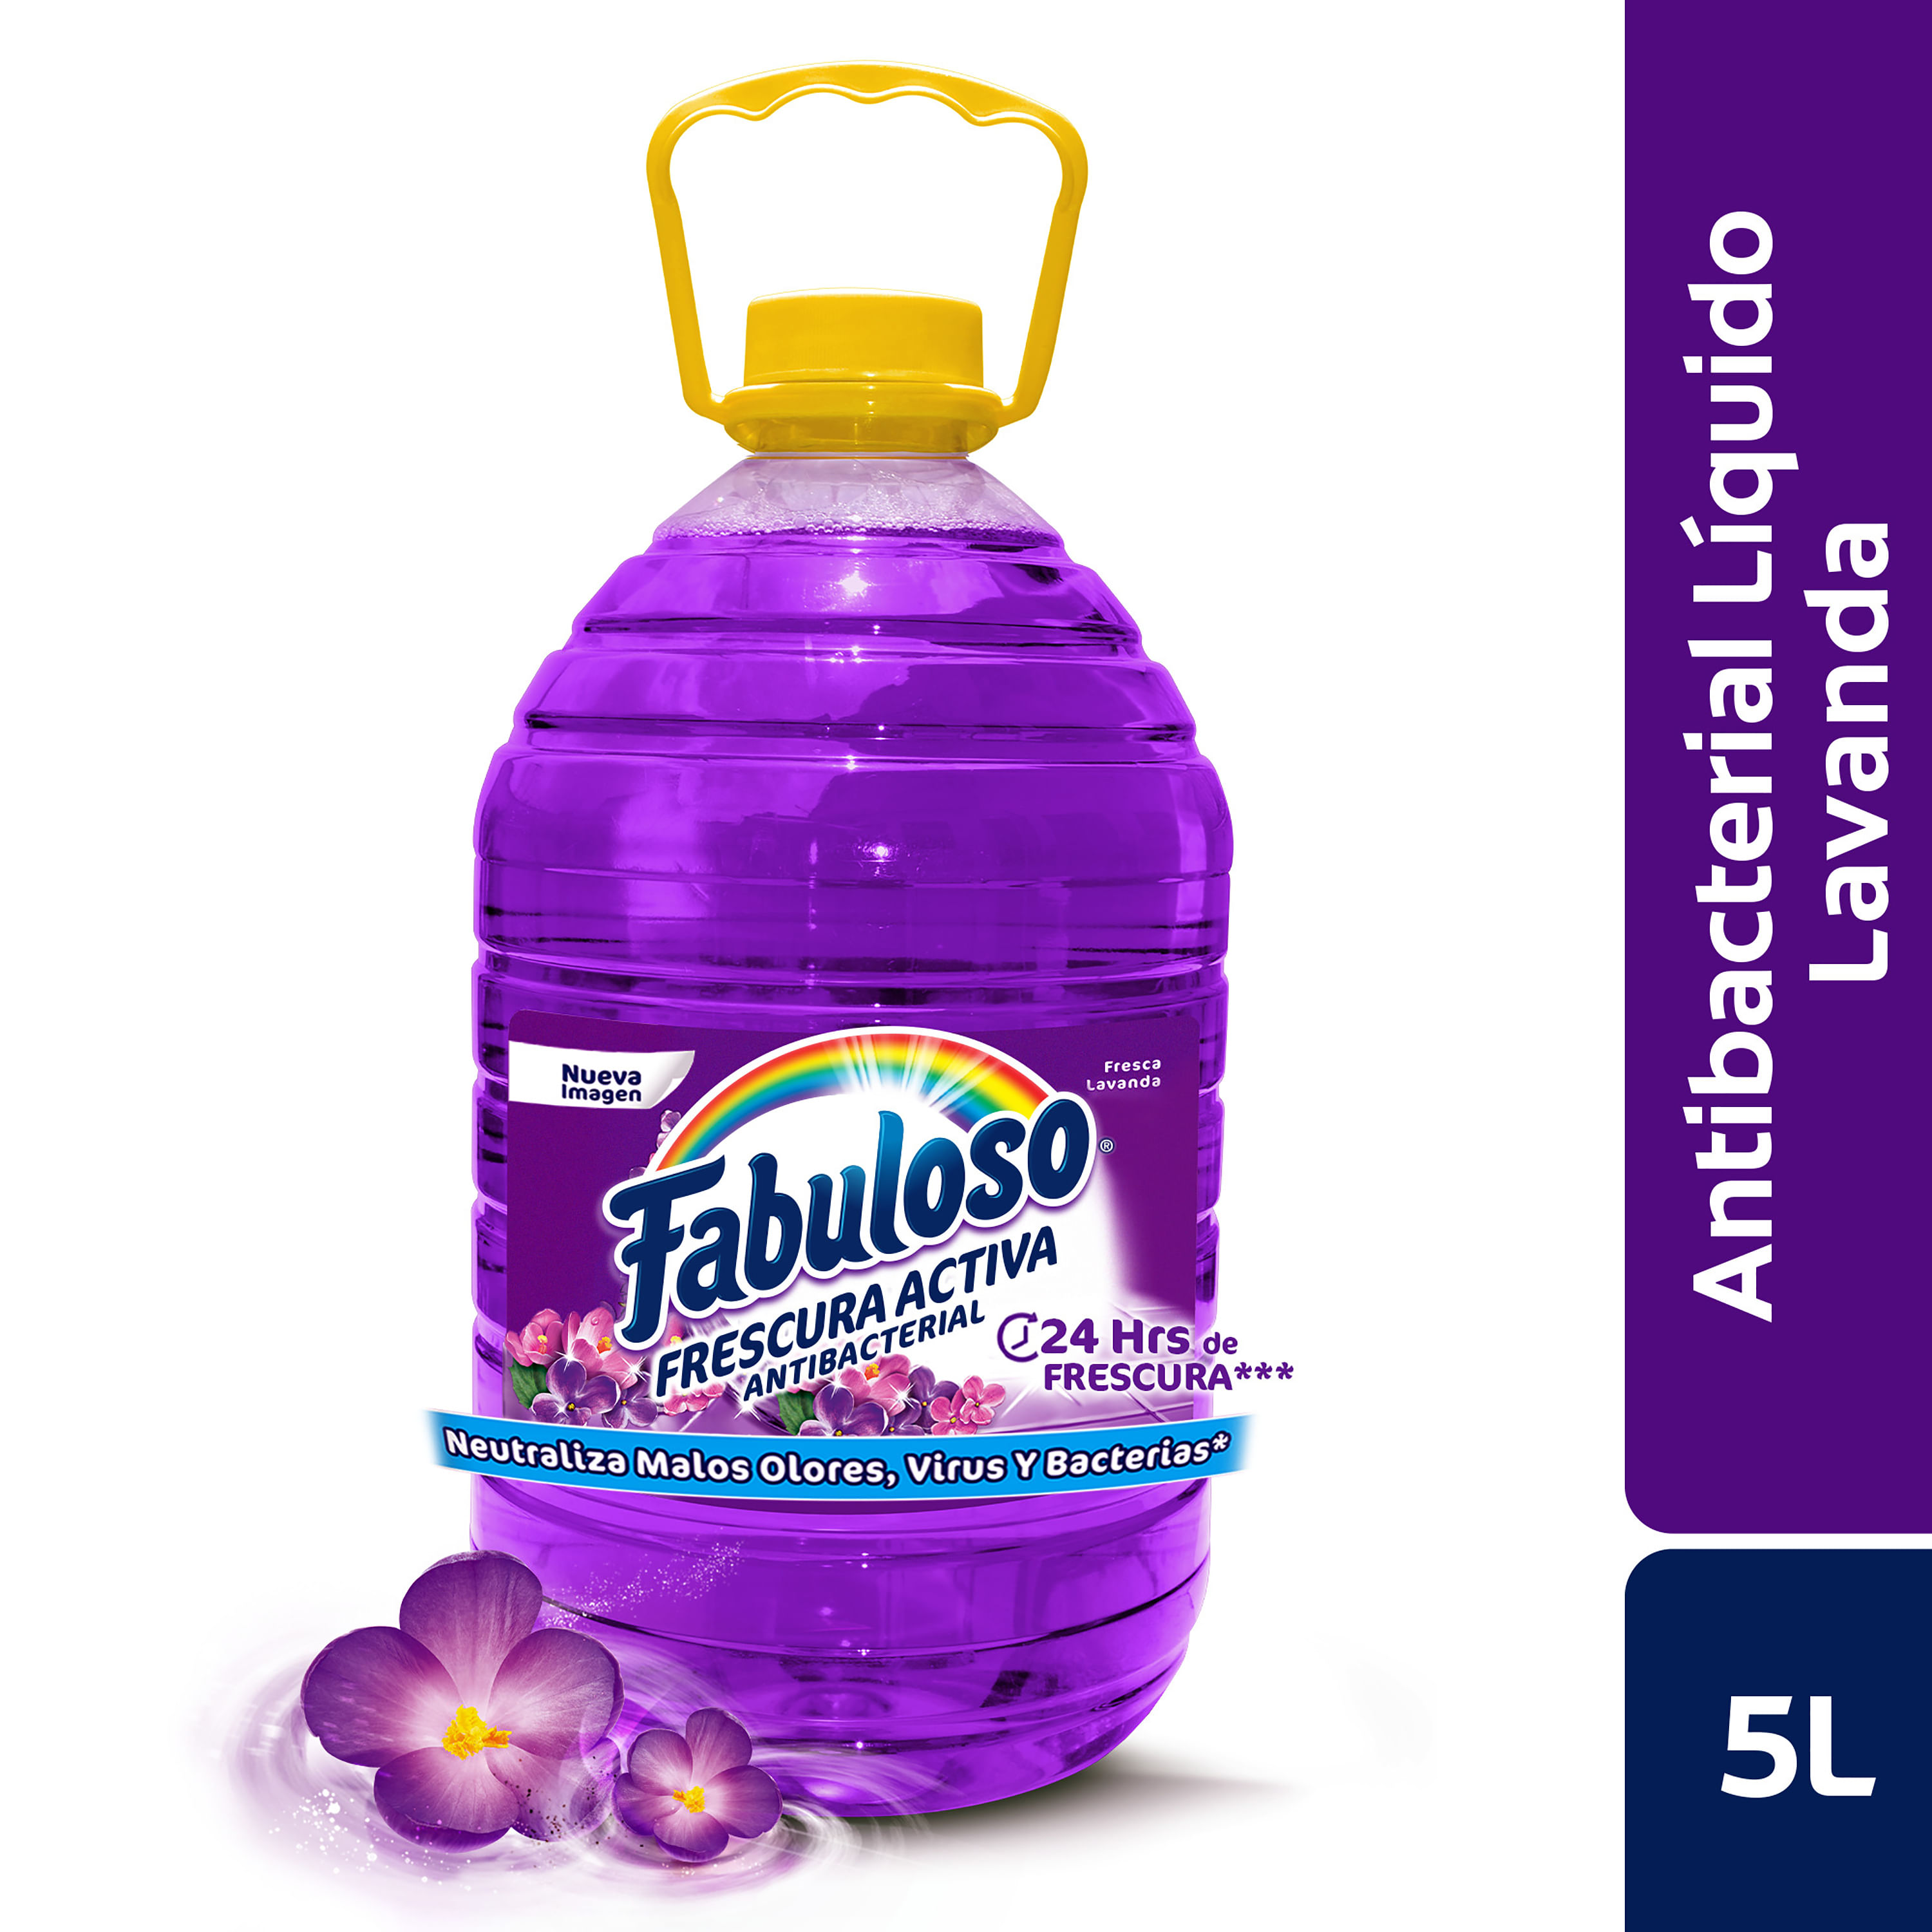 Desinfectante-Multiusos-Fabuloso-Frescura-Activa-Antibacterial-Lavanda-5-l-1-8531